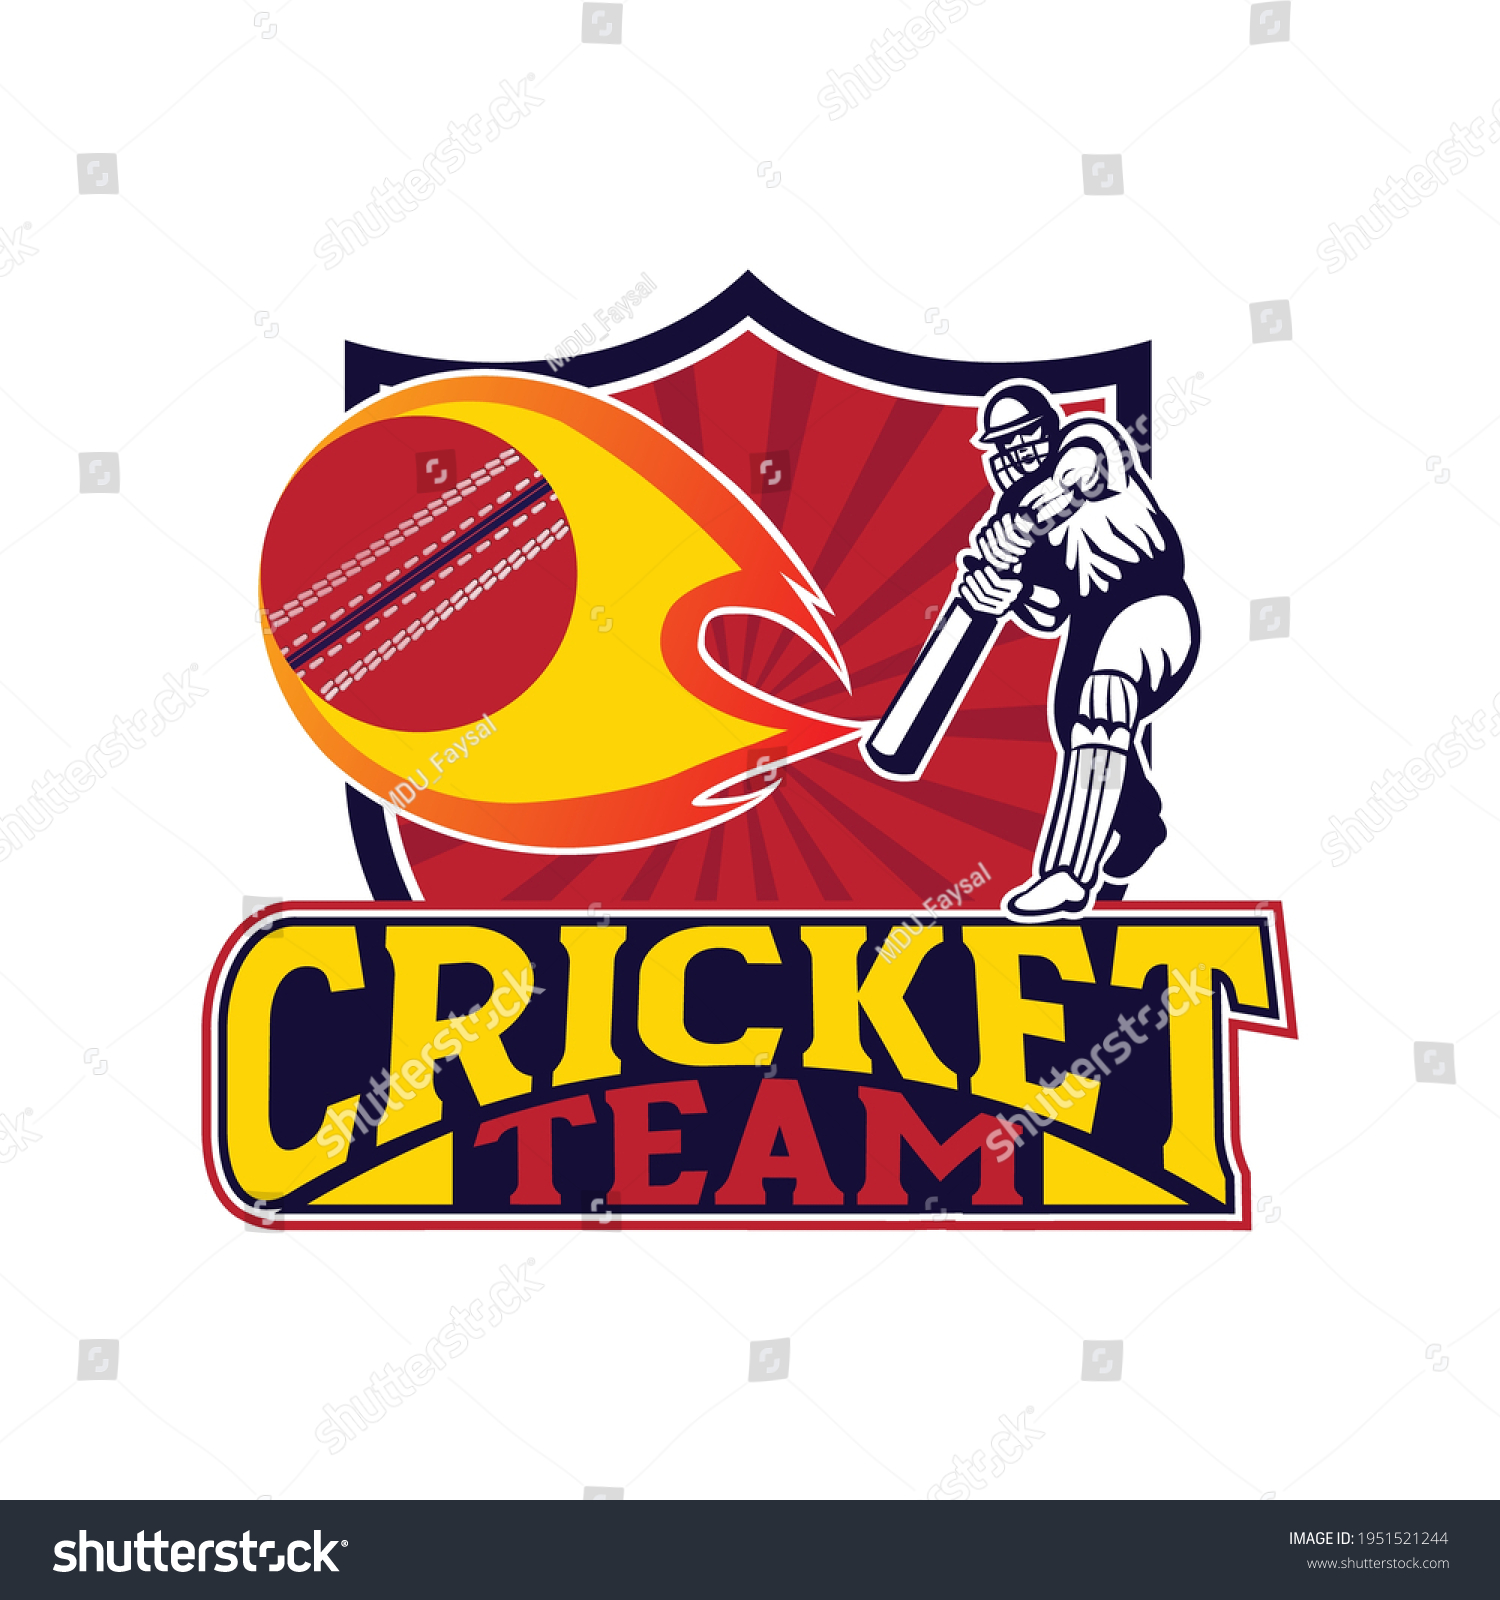 Cricket Team Logo Creative Cricket Icon Stock Vector (Royalty Free ...